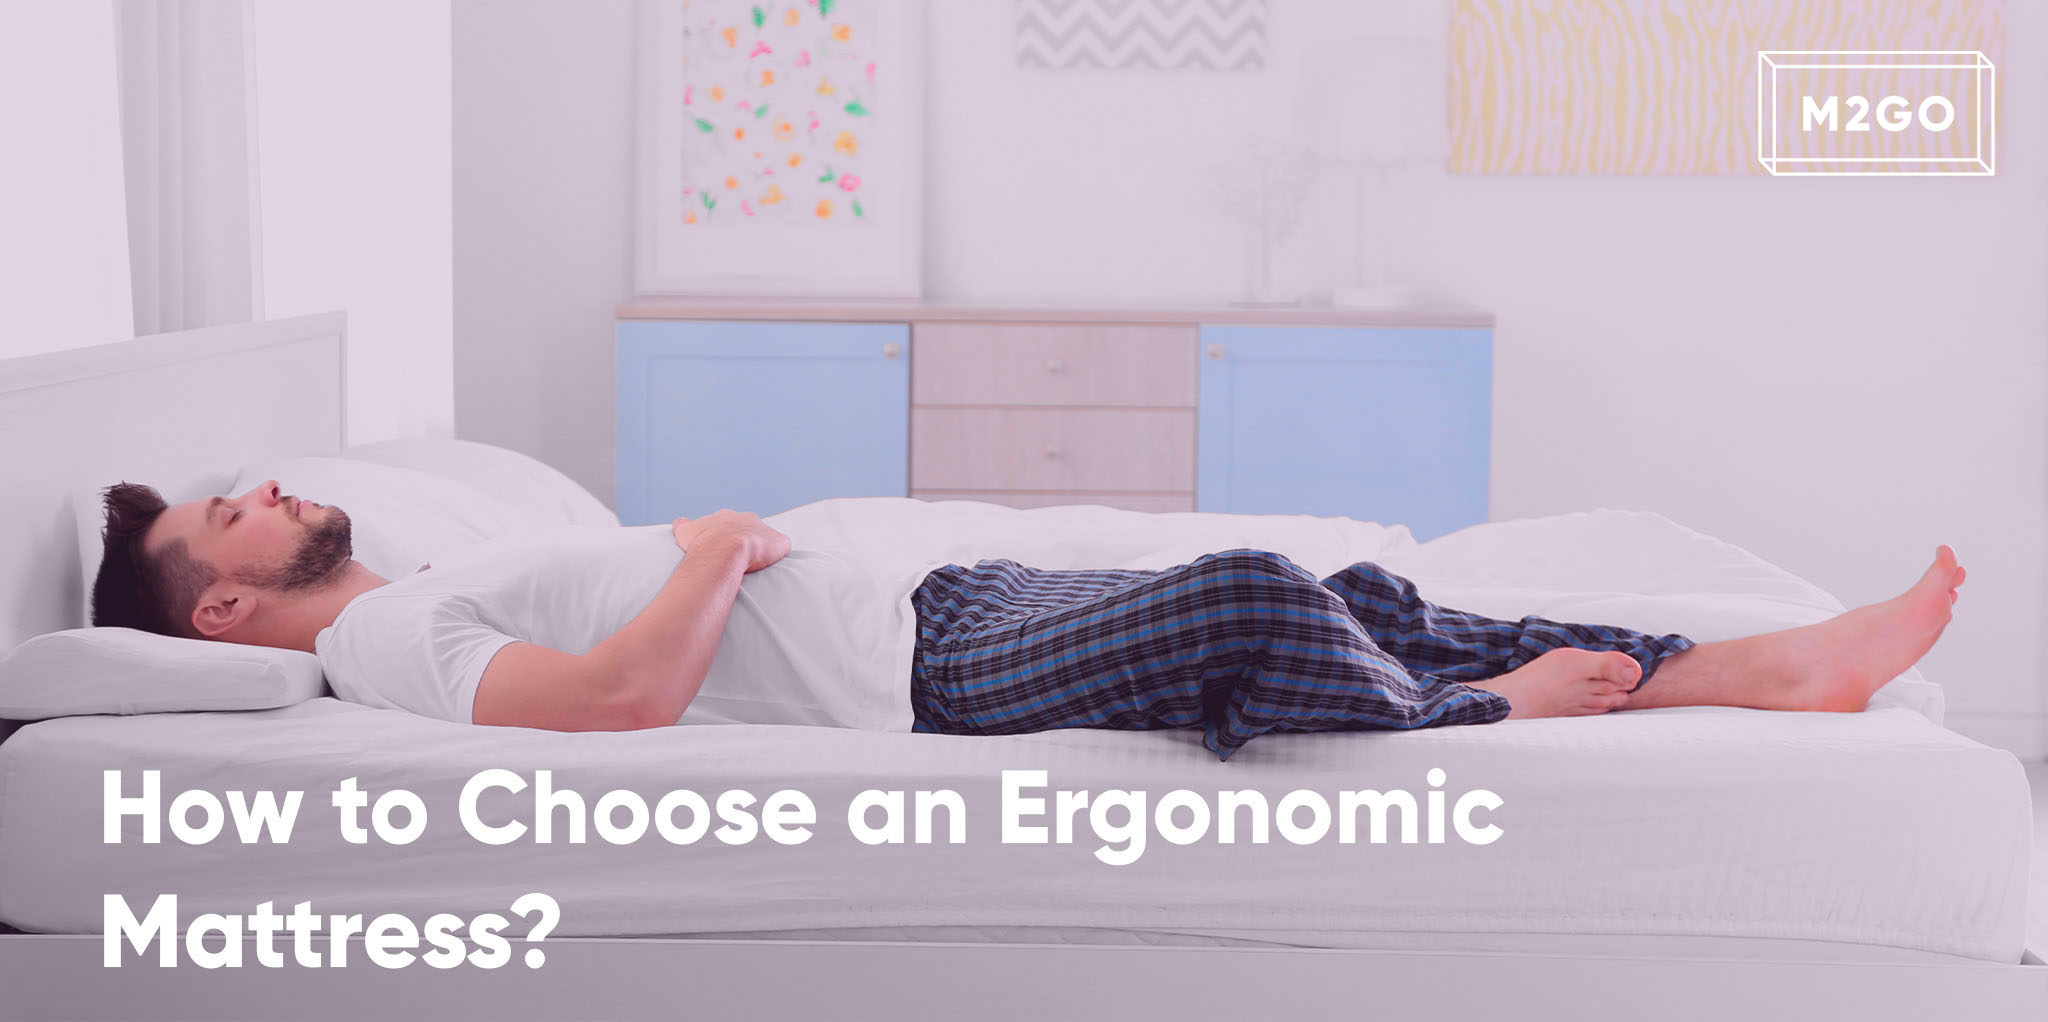 How to Choose an Ergonomic Mattress?